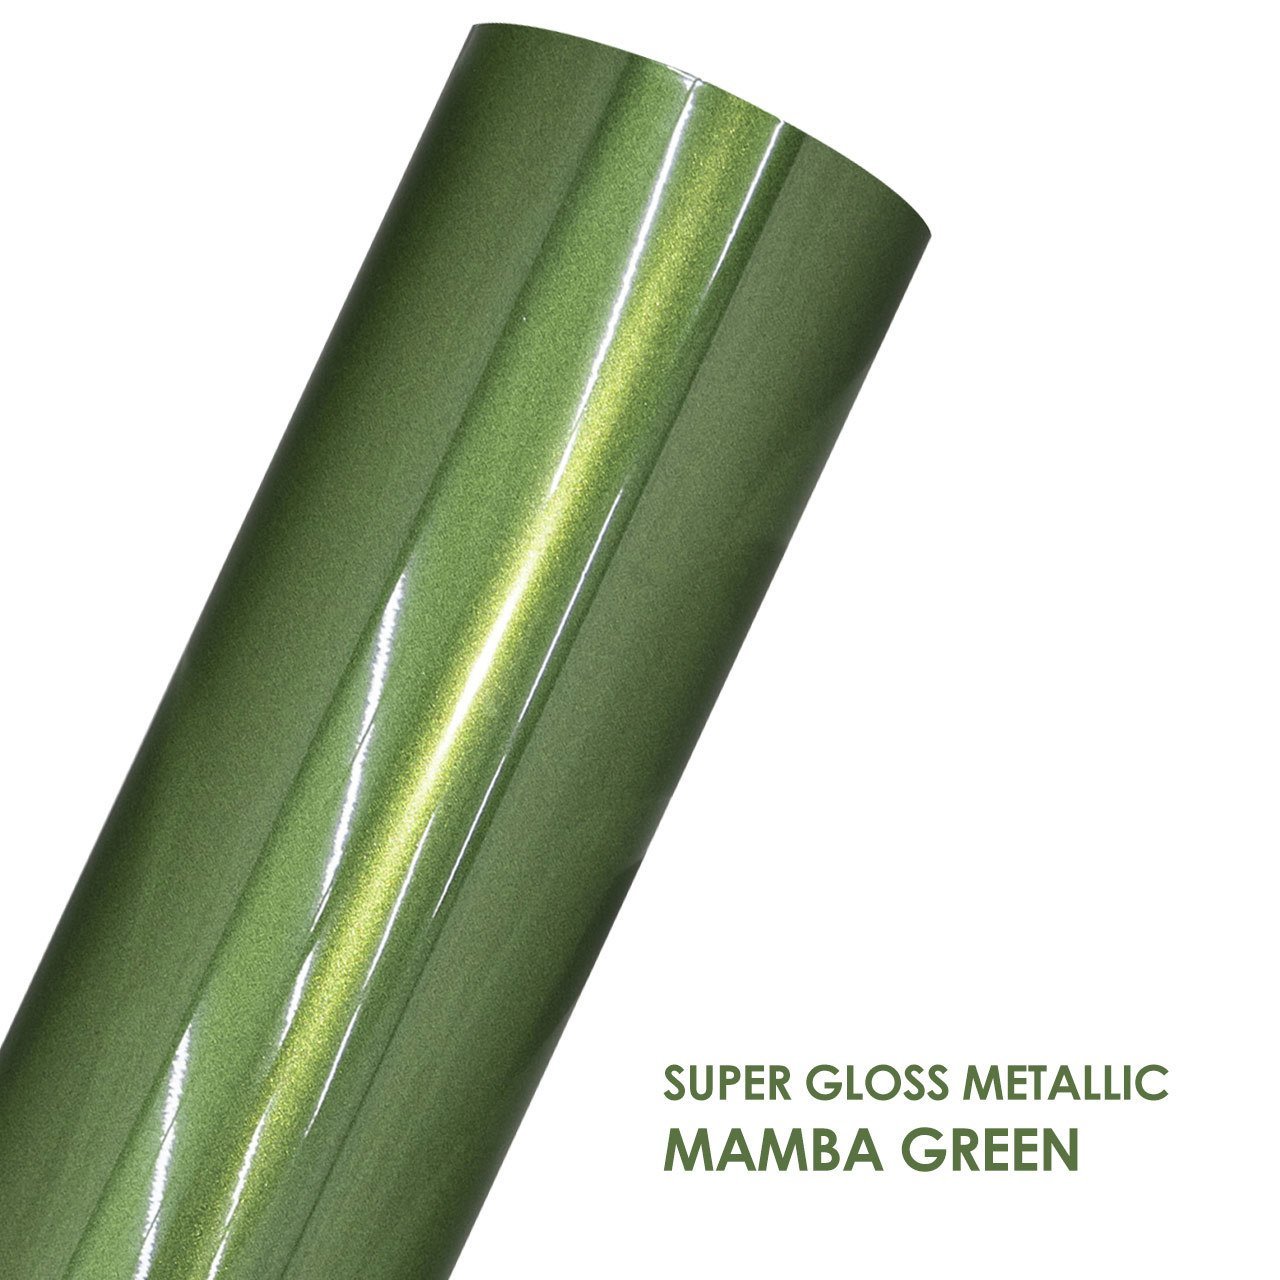 SUPER GLOSS METALLIC MAMBA GREEN